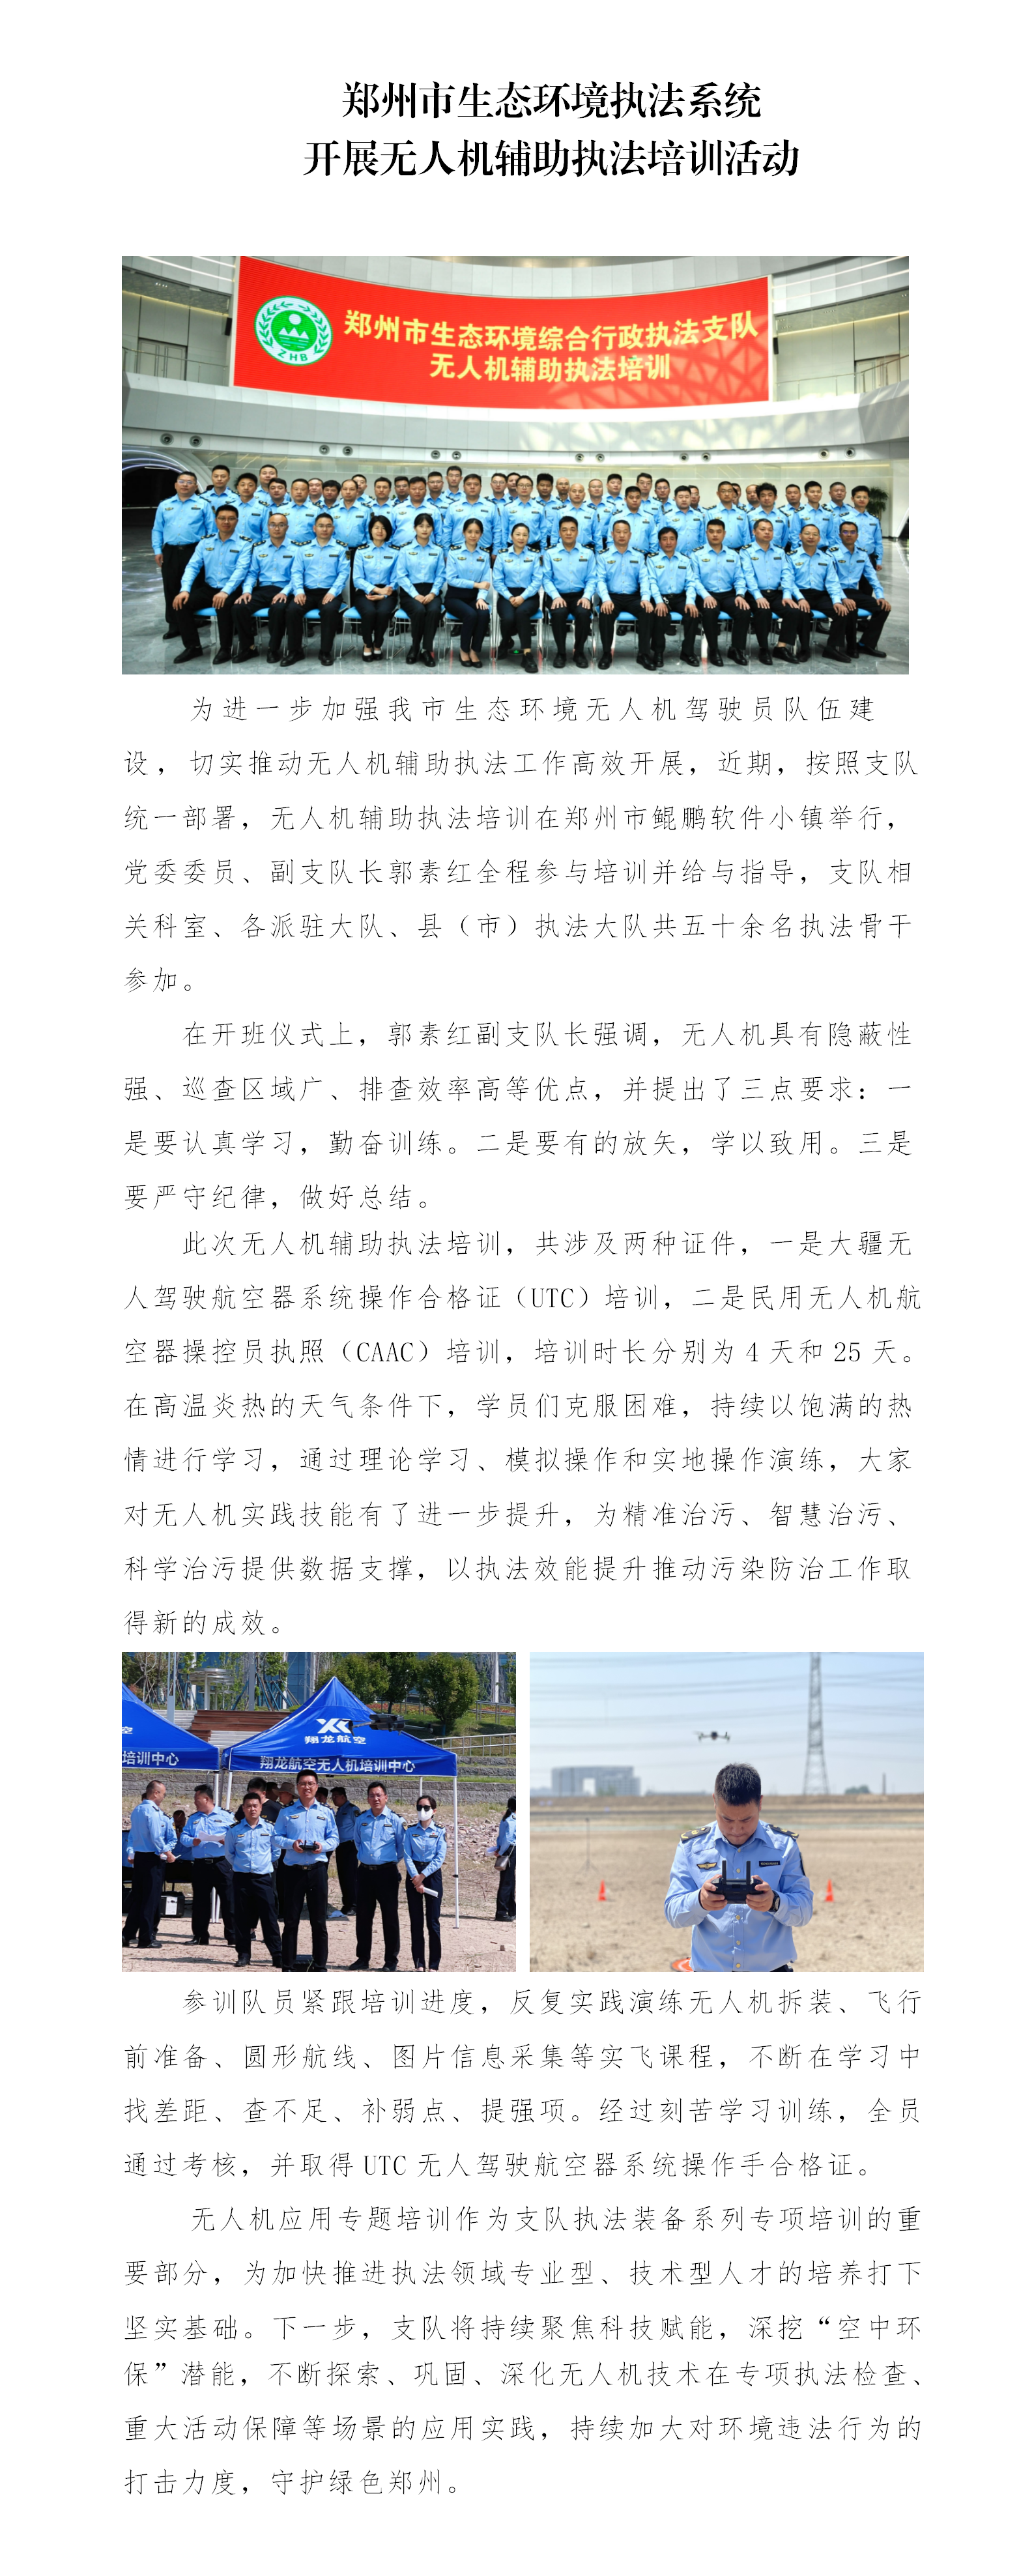 第12期 郑州市生态环境执法系统开展无人机辅助执法培训活动_01.png